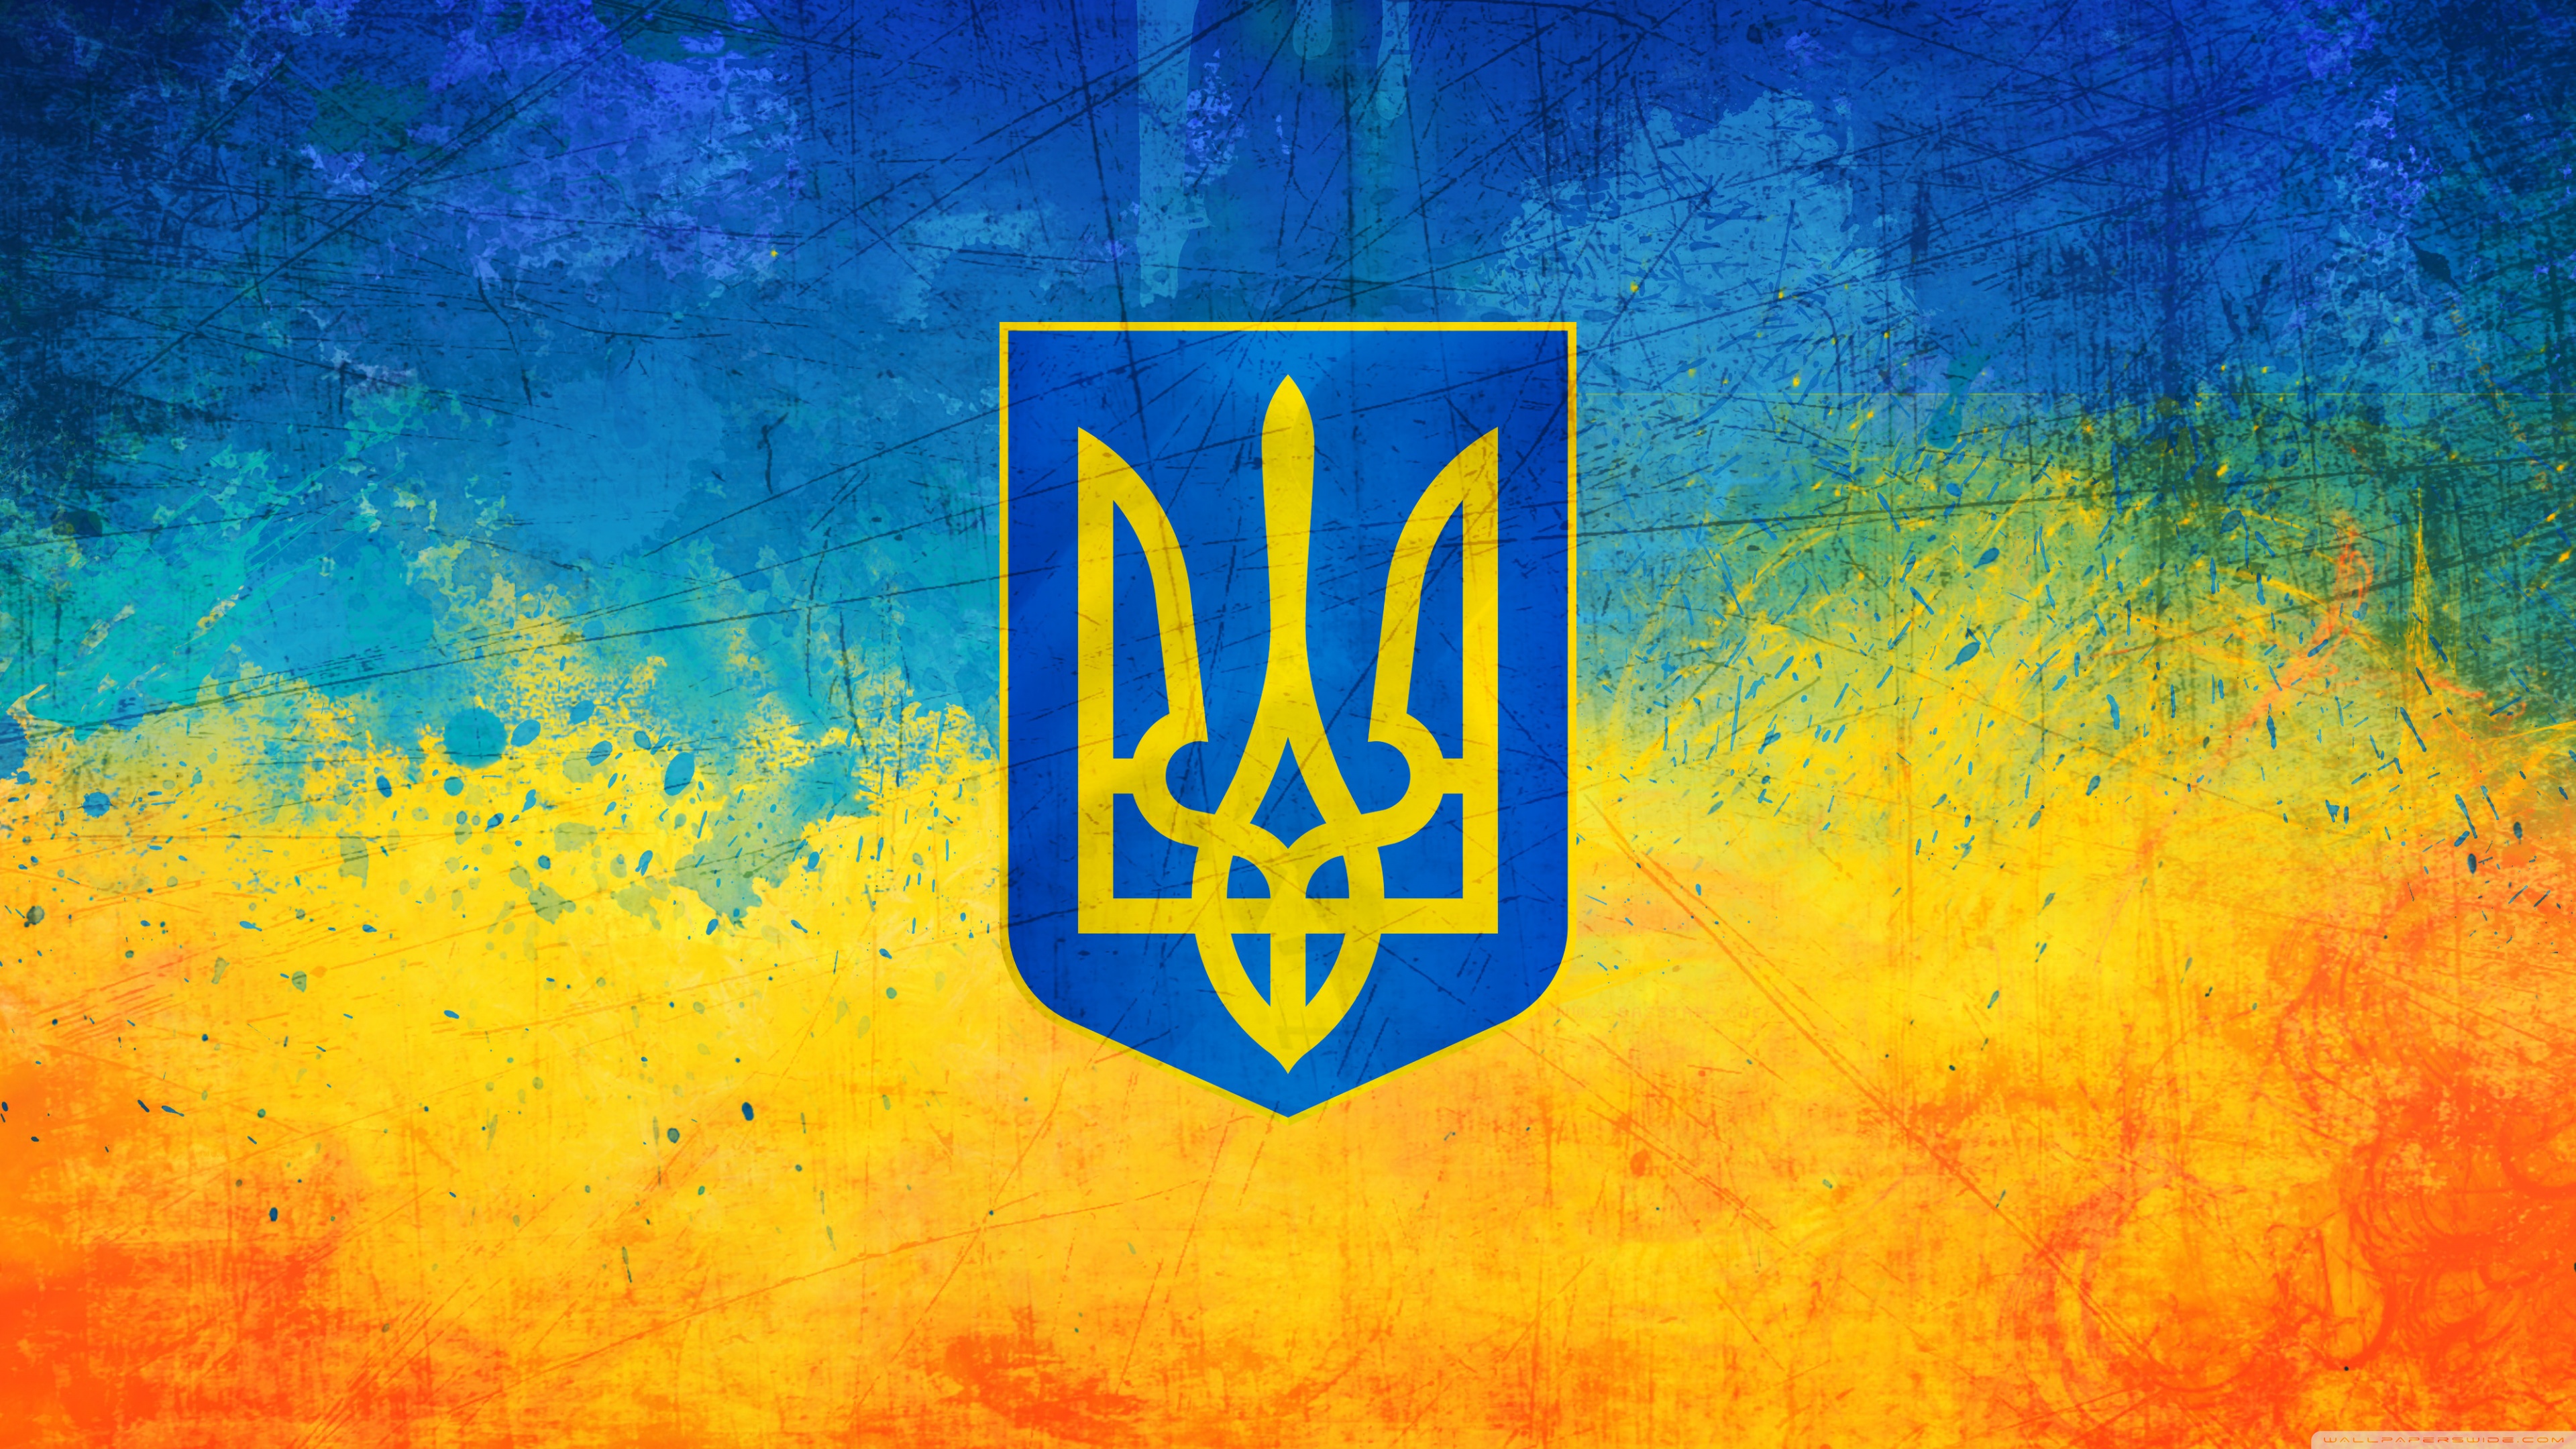 Quốc kỳ Ukraine với chất lượng 4K sẽ làm bạn trầm trồ với độ sắc nét và chi tiết tuyệt vời. Hãy xem hình ảnh này để khám phá vẻ đẹp nổi bật của chiếc lá cờ Ukraine.